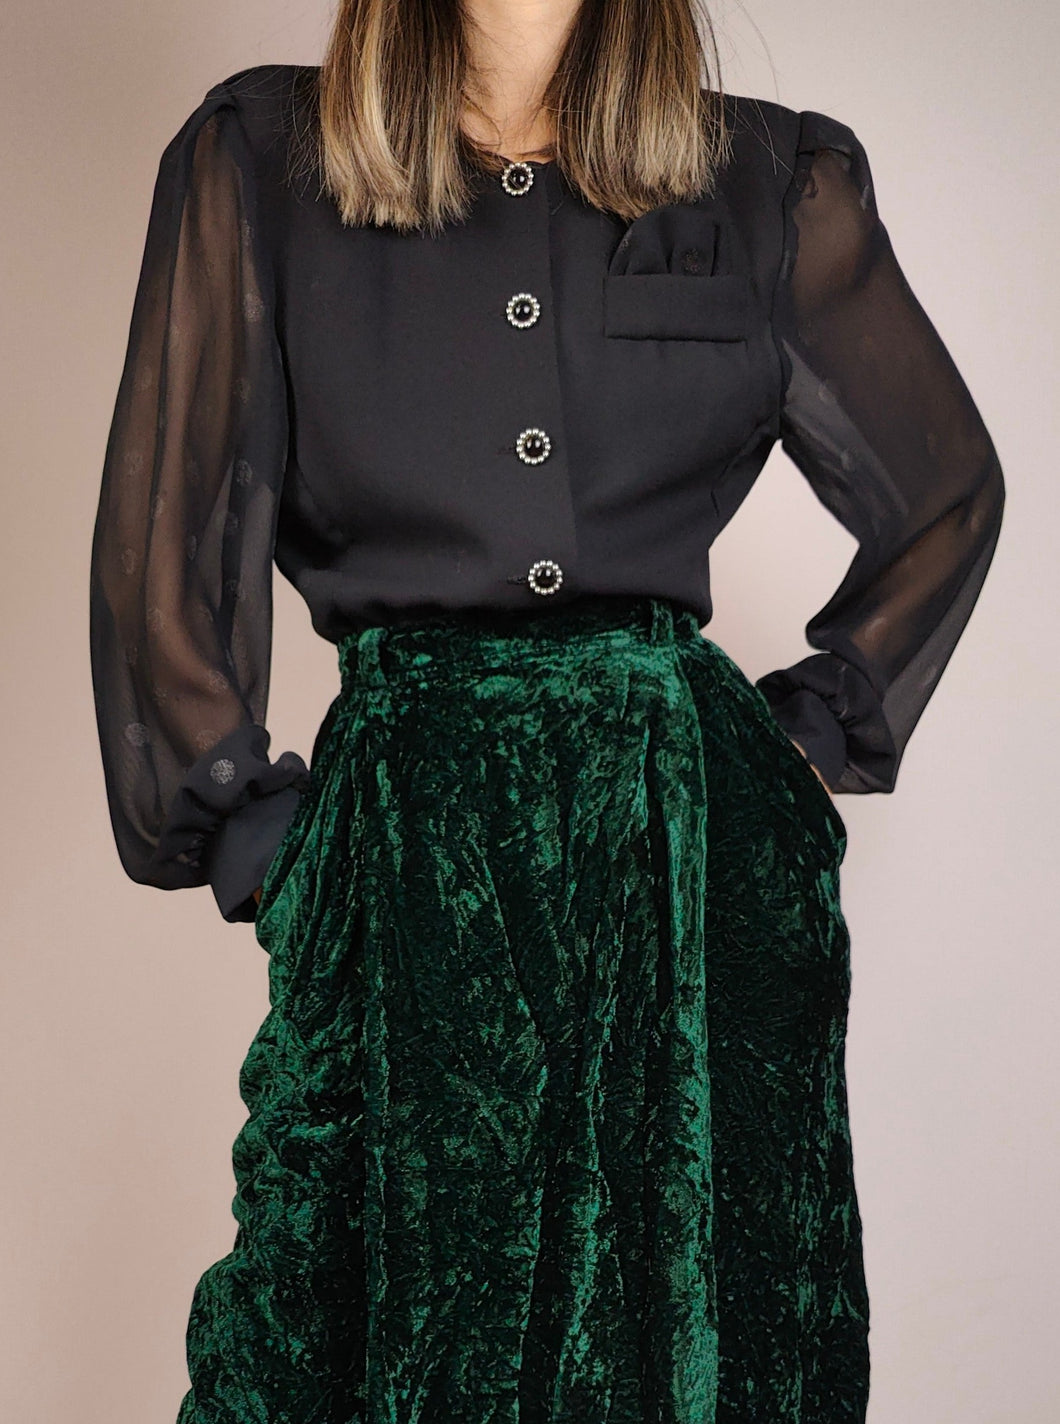 Die schwarze Bluse mit Polka-Ärmeln | Vintage 80er Jahre schwarze transparente Polka Dot Bluse Blazerjacke S